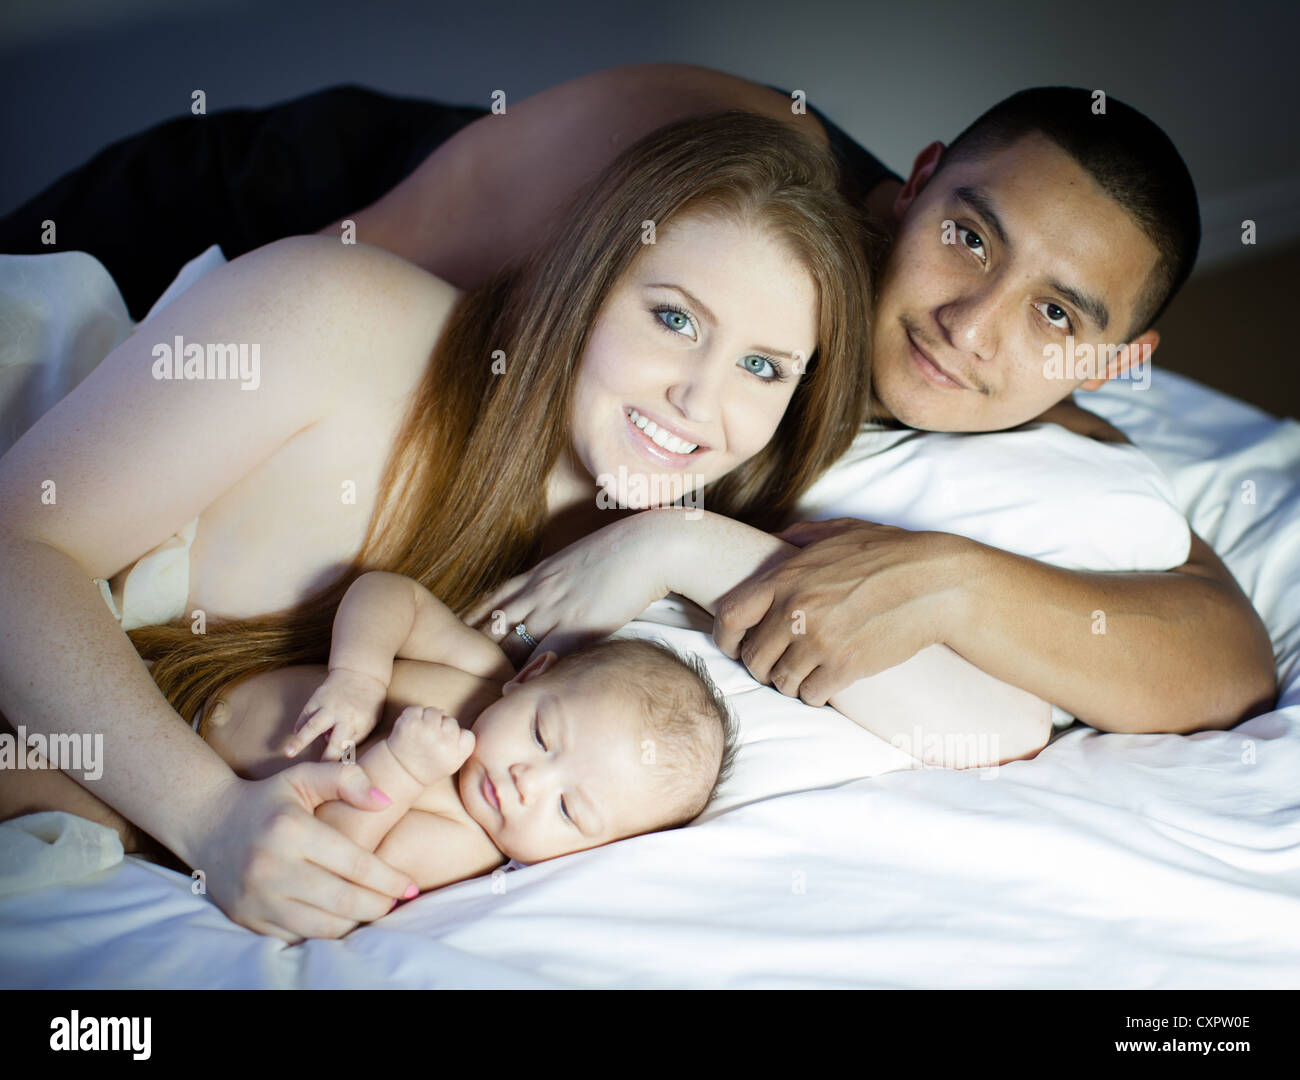 Mama Y Papa Con Su Bebe Recien Nacido Fotografia De Stock Alamy